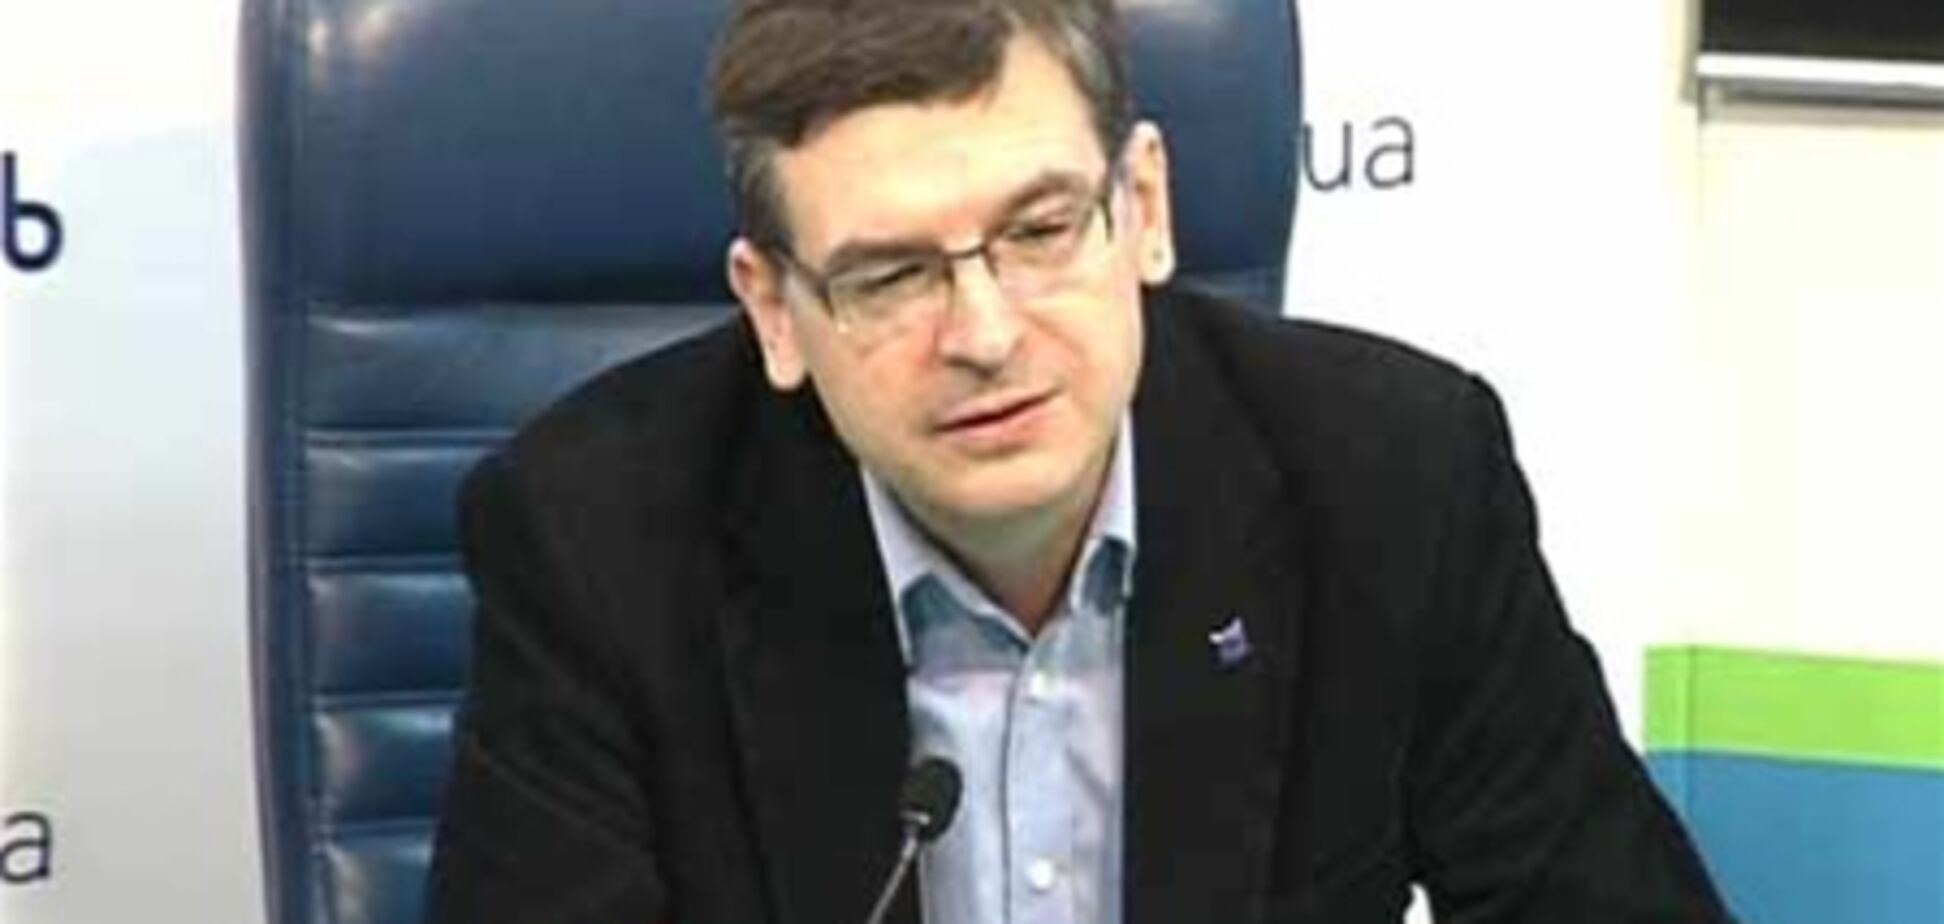 Вимоги ЄС щодо Тимошенко 'практично непідйомні' - експерт